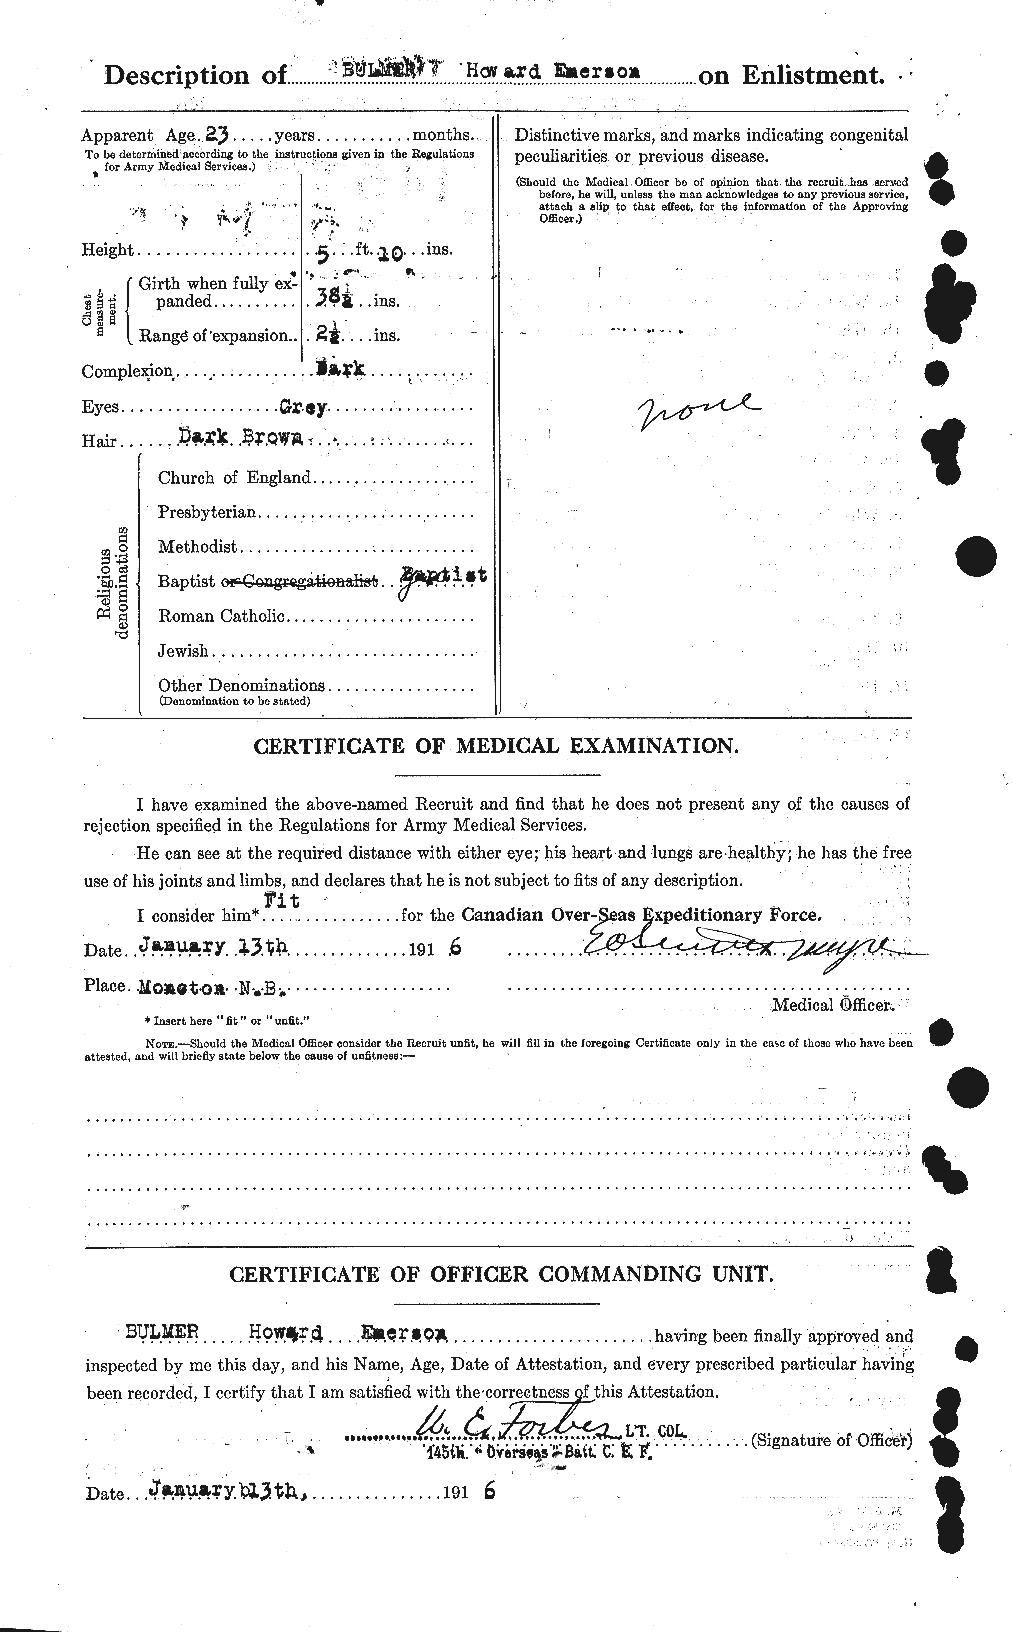 Dossiers du Personnel de la Première Guerre mondiale - CEC 269821b